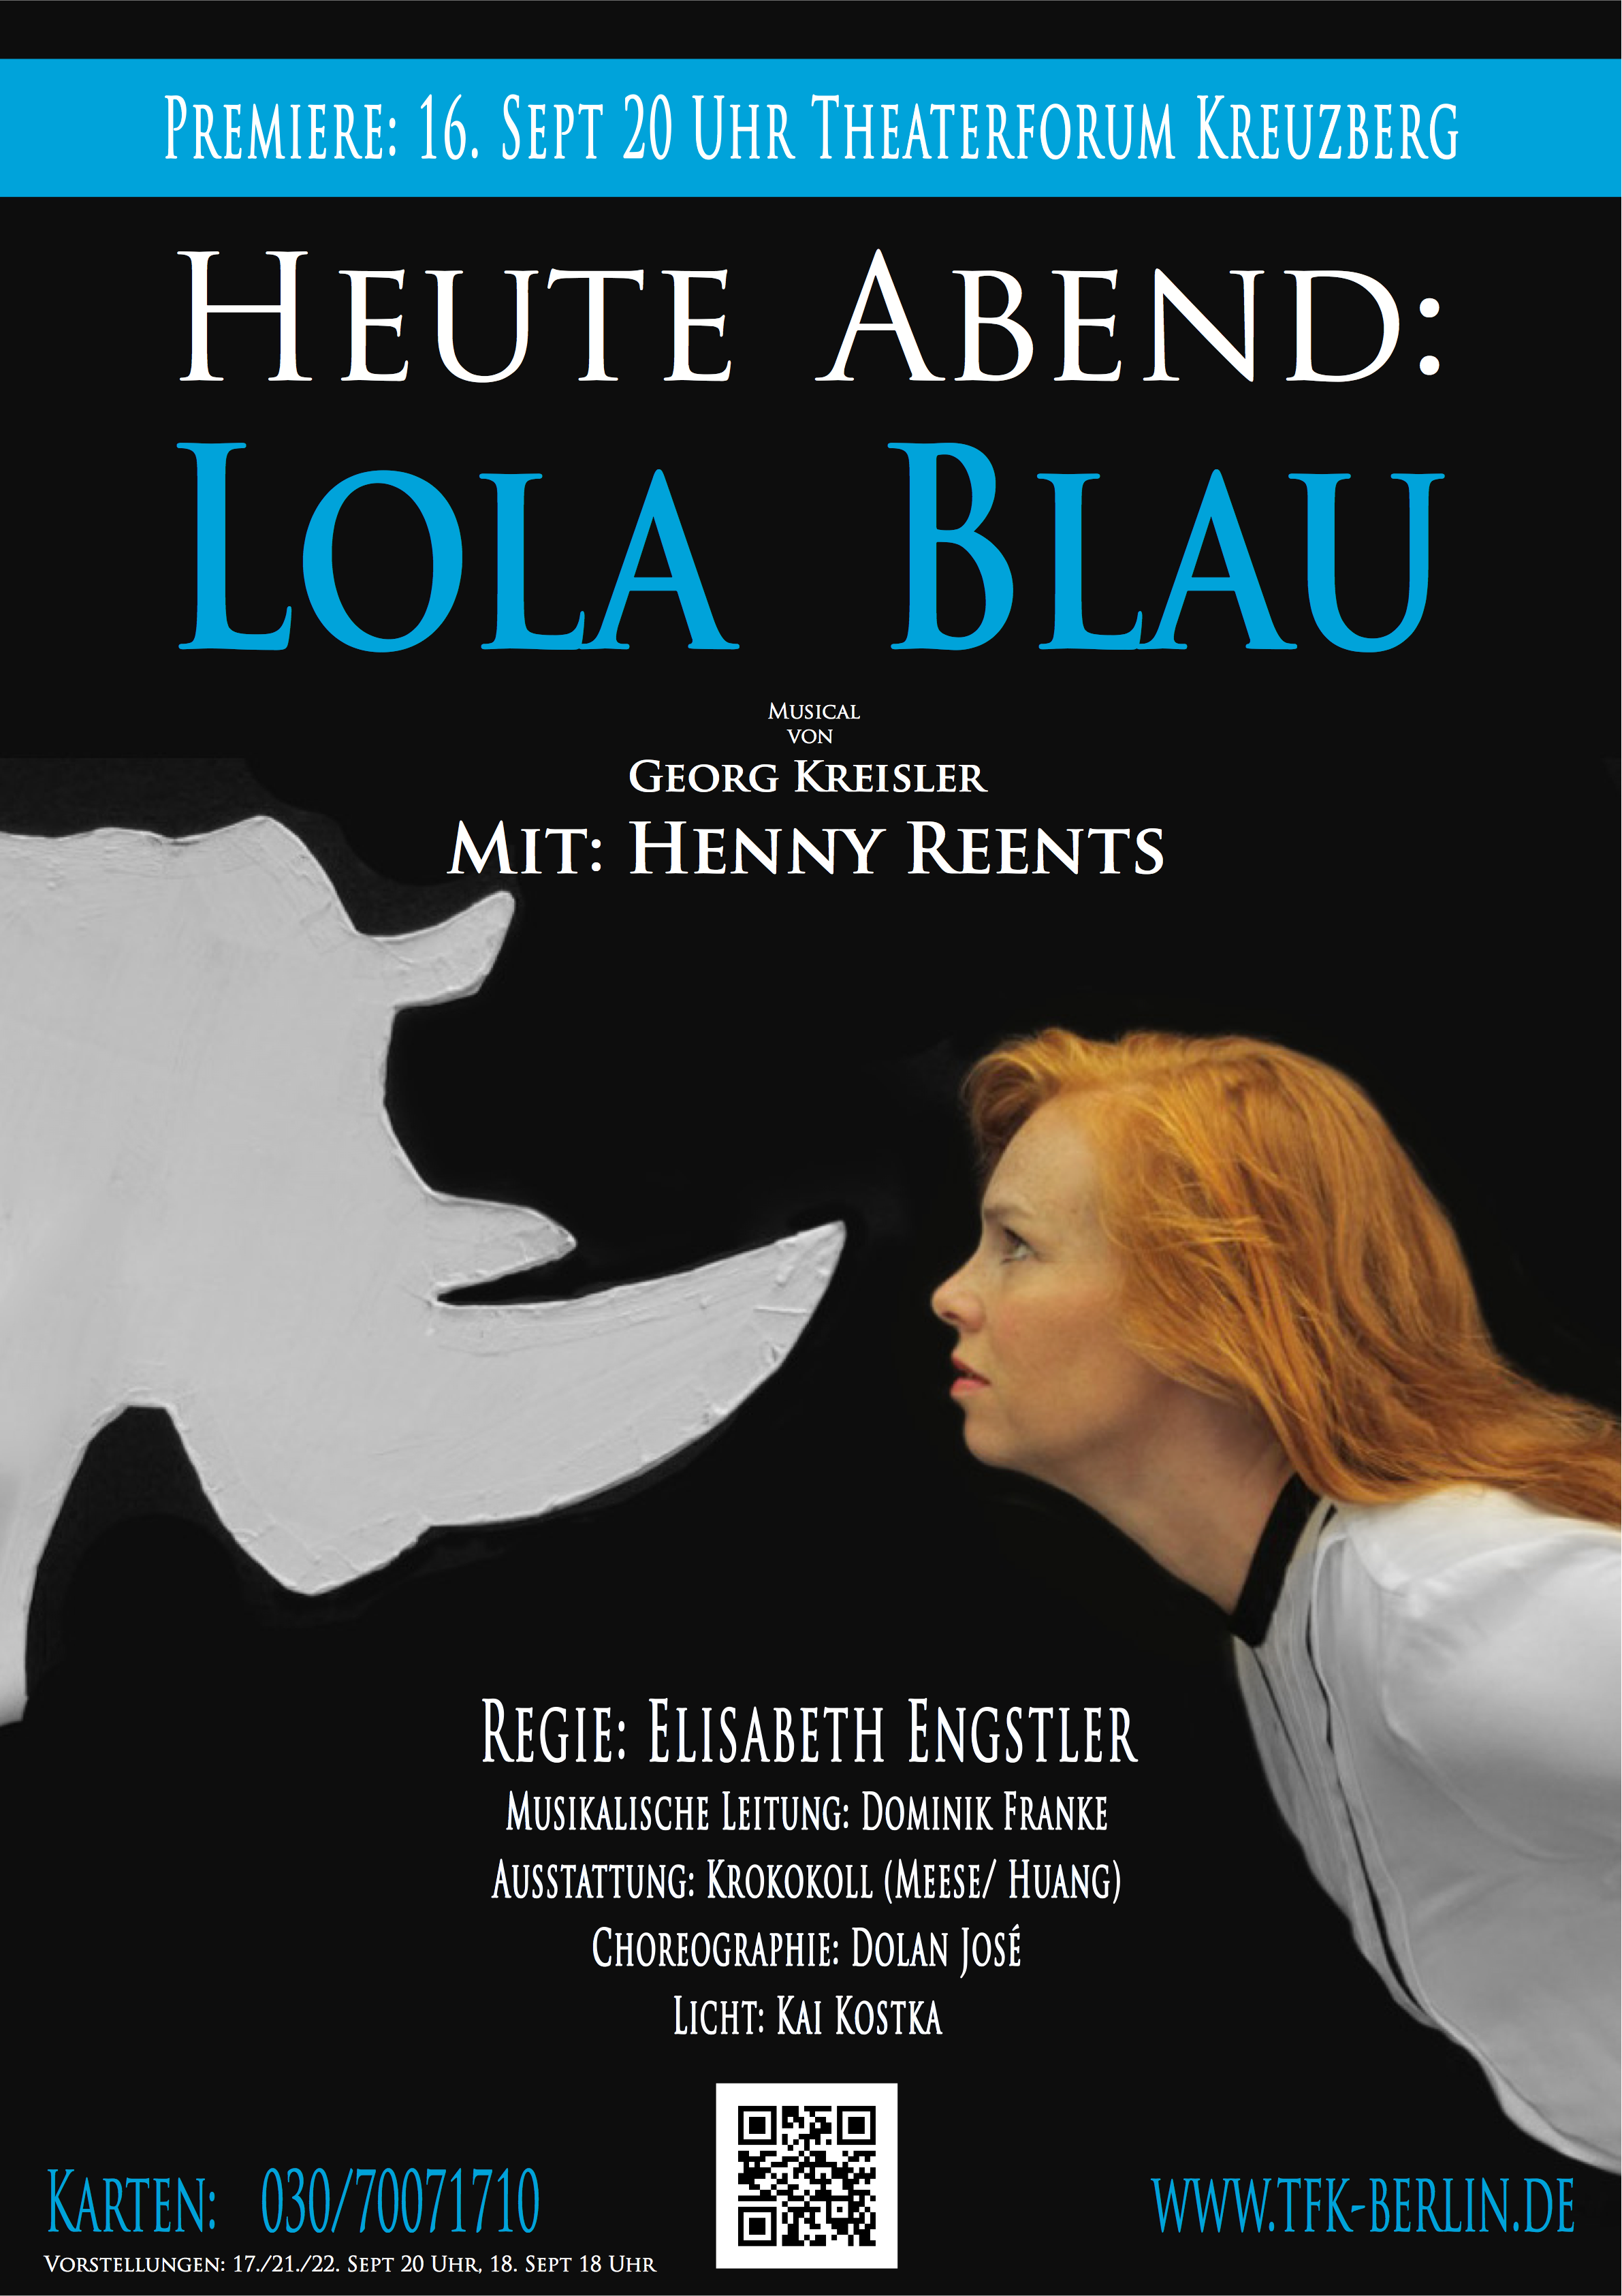 HEUTE ABEND: LOLA BLAU